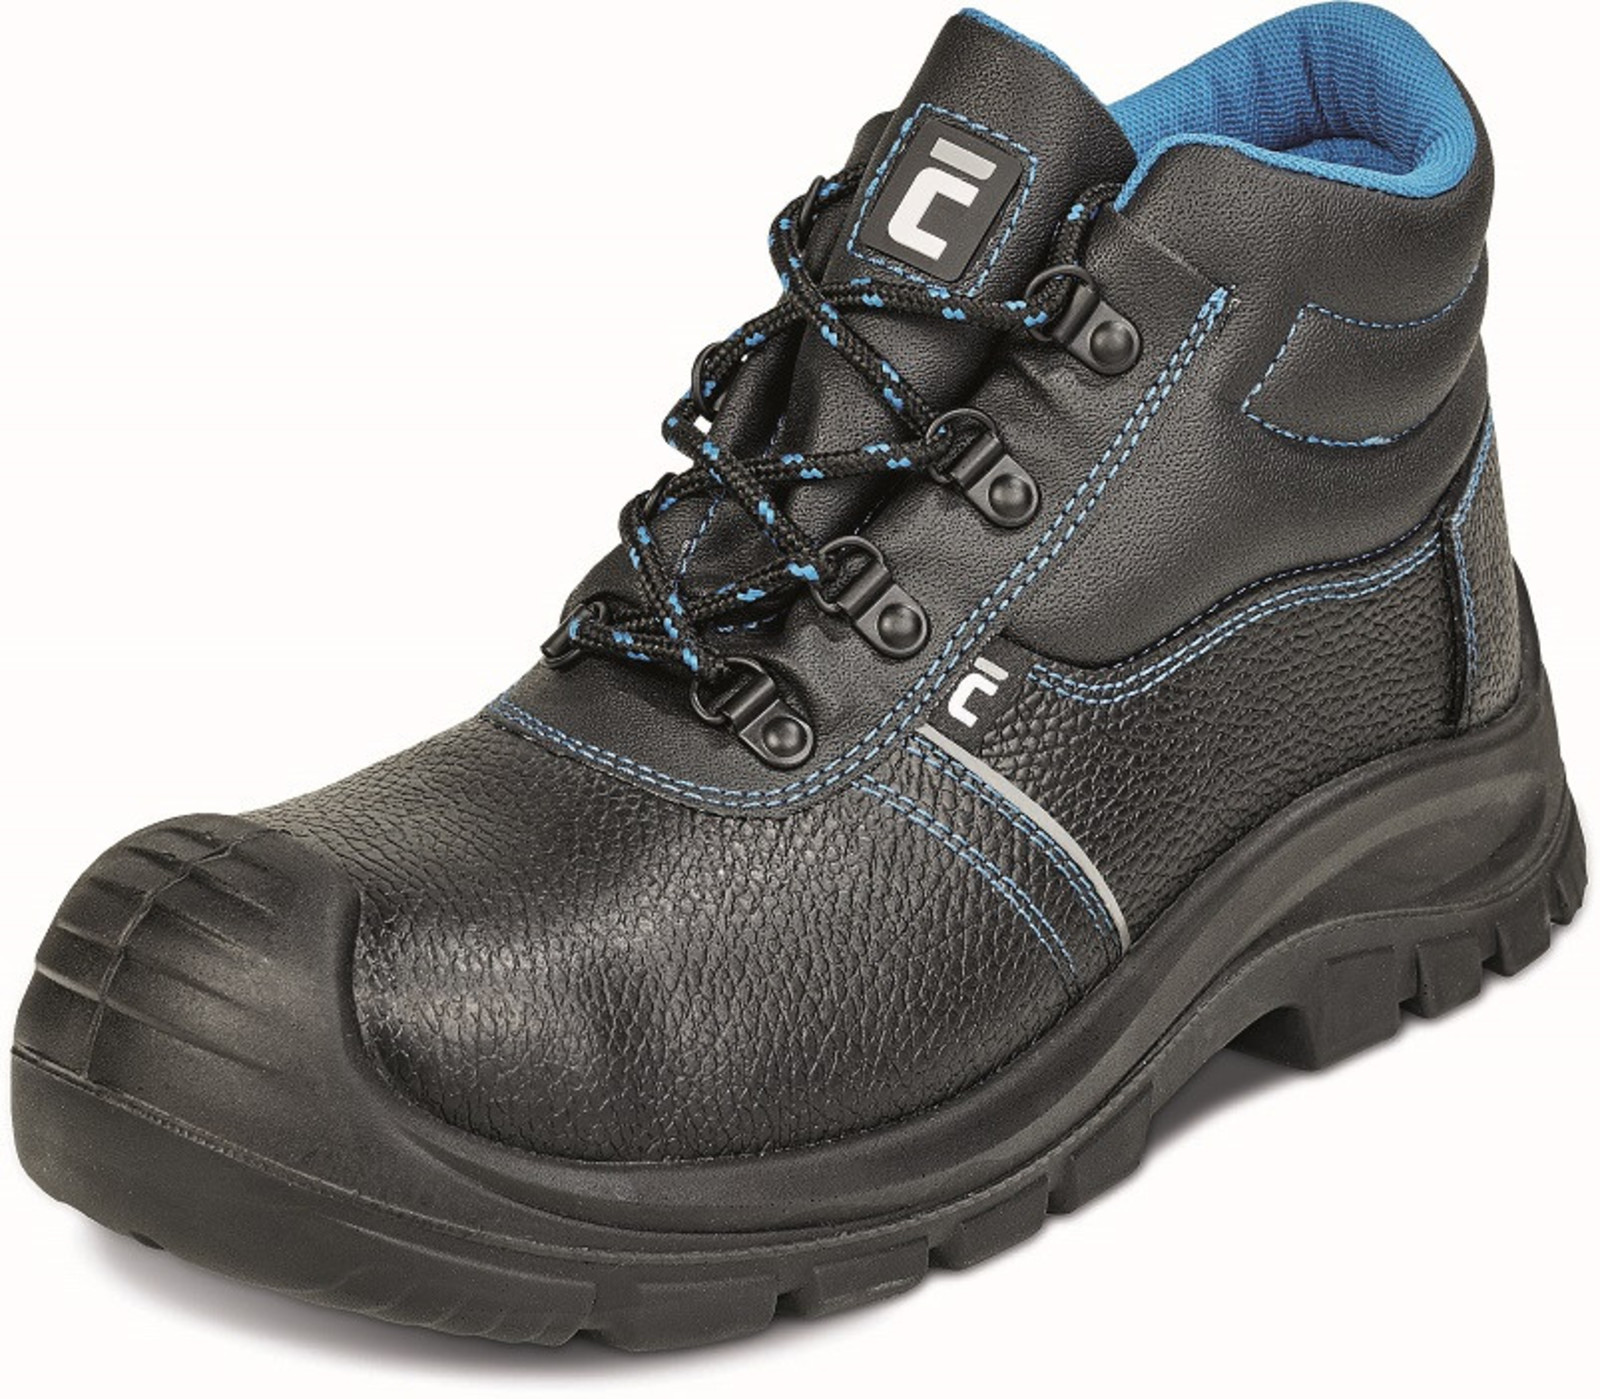 Bezpečnostná obuv Raven XT S1 - veľkosť: 43, farba: čierna